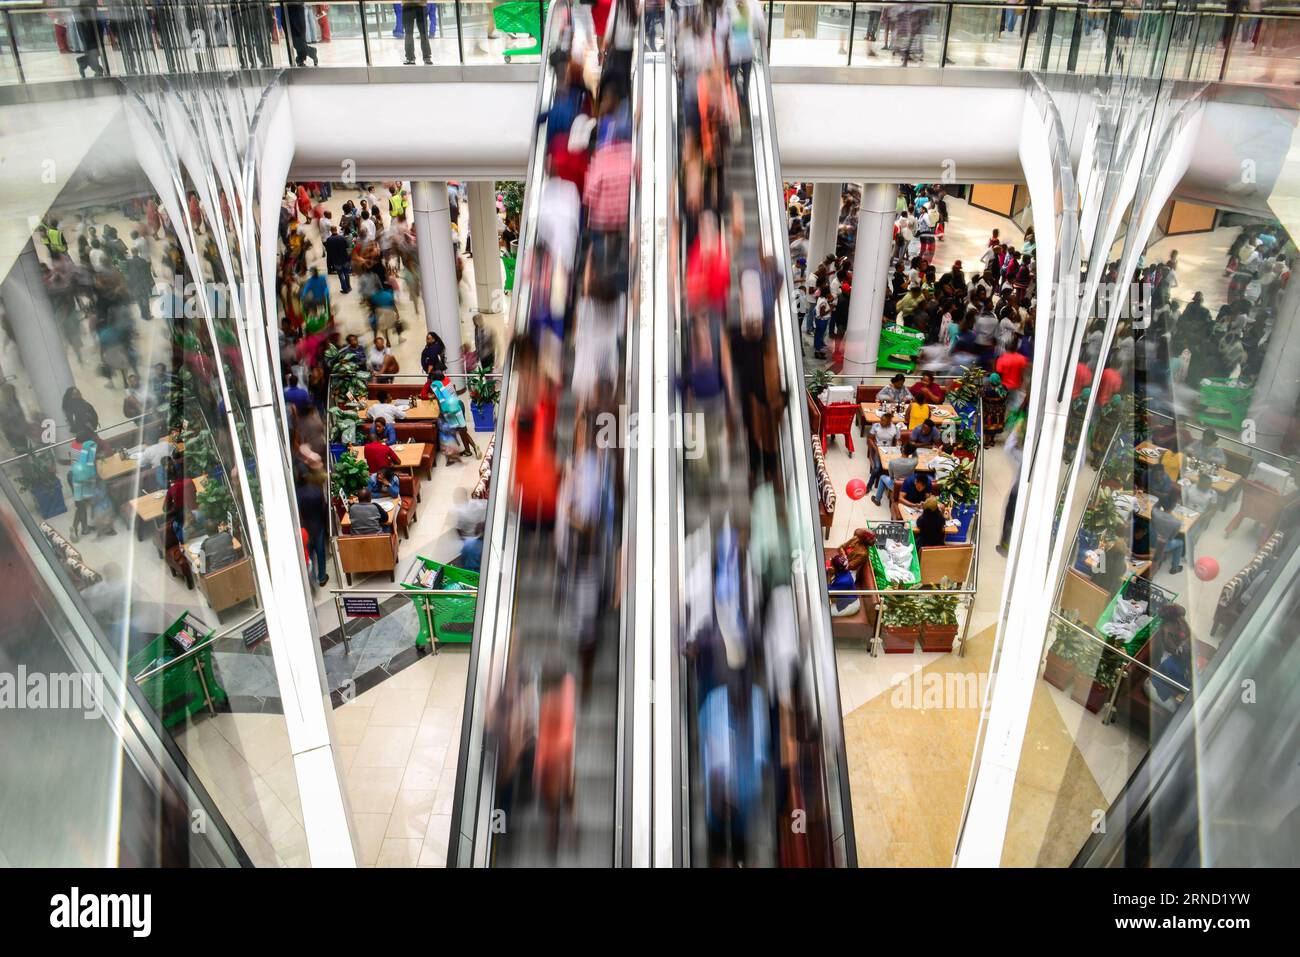 (160428) -- MIDRAND, 28. April 2016 -- Menschen besuchen die Mall of Africa in Midrand, nahe Johannesburg, Südafrika, am 28. April 2016. Die Mall of Africa, das größte Einkaufszentrum Südafrikas, wurde am Donnerstag offiziell eröffnet und bietet 130.000 Quadratmeter Verkaufsfläche. Die Mall beherbergt über 300 Geschäfte lokaler und internationaler Marken, von denen viele Flagship-Stores sind. Besucherströme kamen zur Mall für die Werbeaktionen, die die Geschäfte am Eröffnungstag gaben. ) SÜDAFRIKA-MIDRAND-LARGEST MALL-OPENING ZHAIXJIANLAN PUBLICATIONXNOTXINXCHN Stockfoto